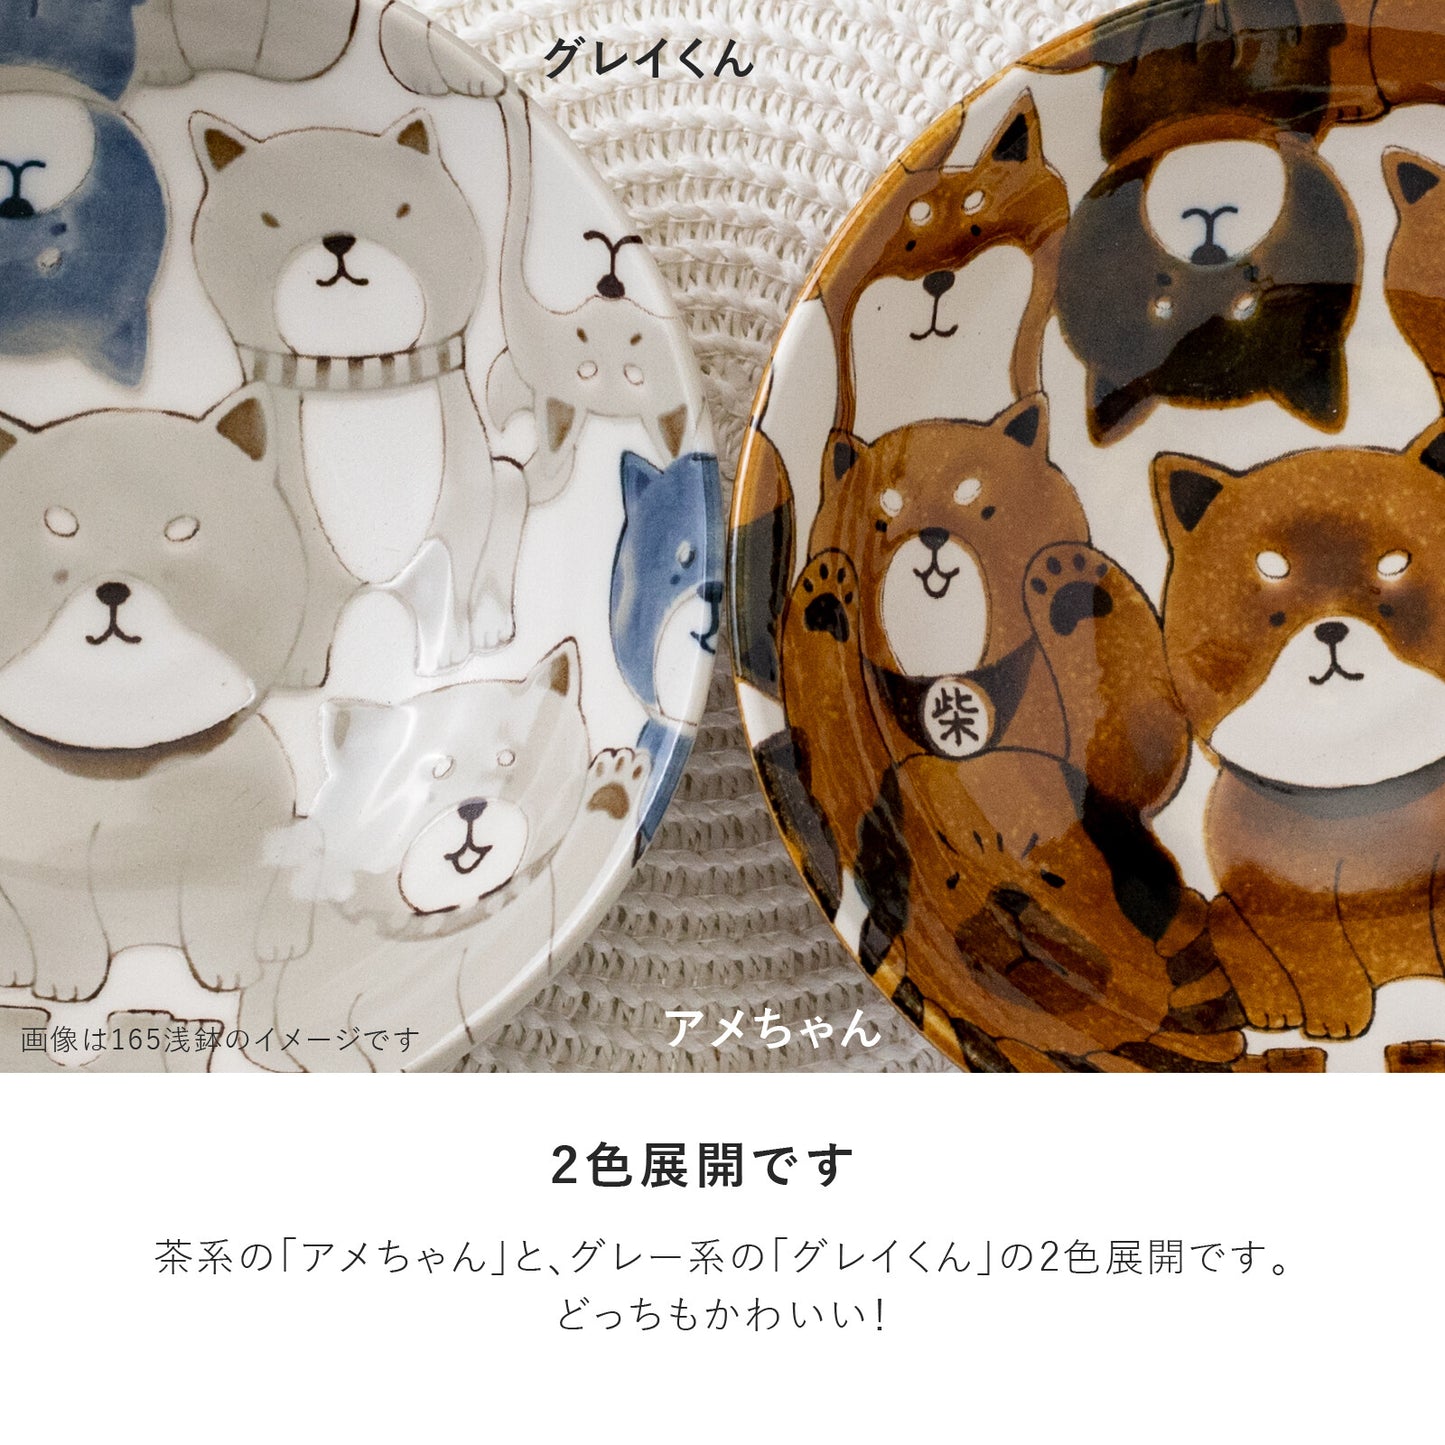 【預購】日本製 わんわん 柴犬陶瓷大碗碟兩色選 (23.5cm)